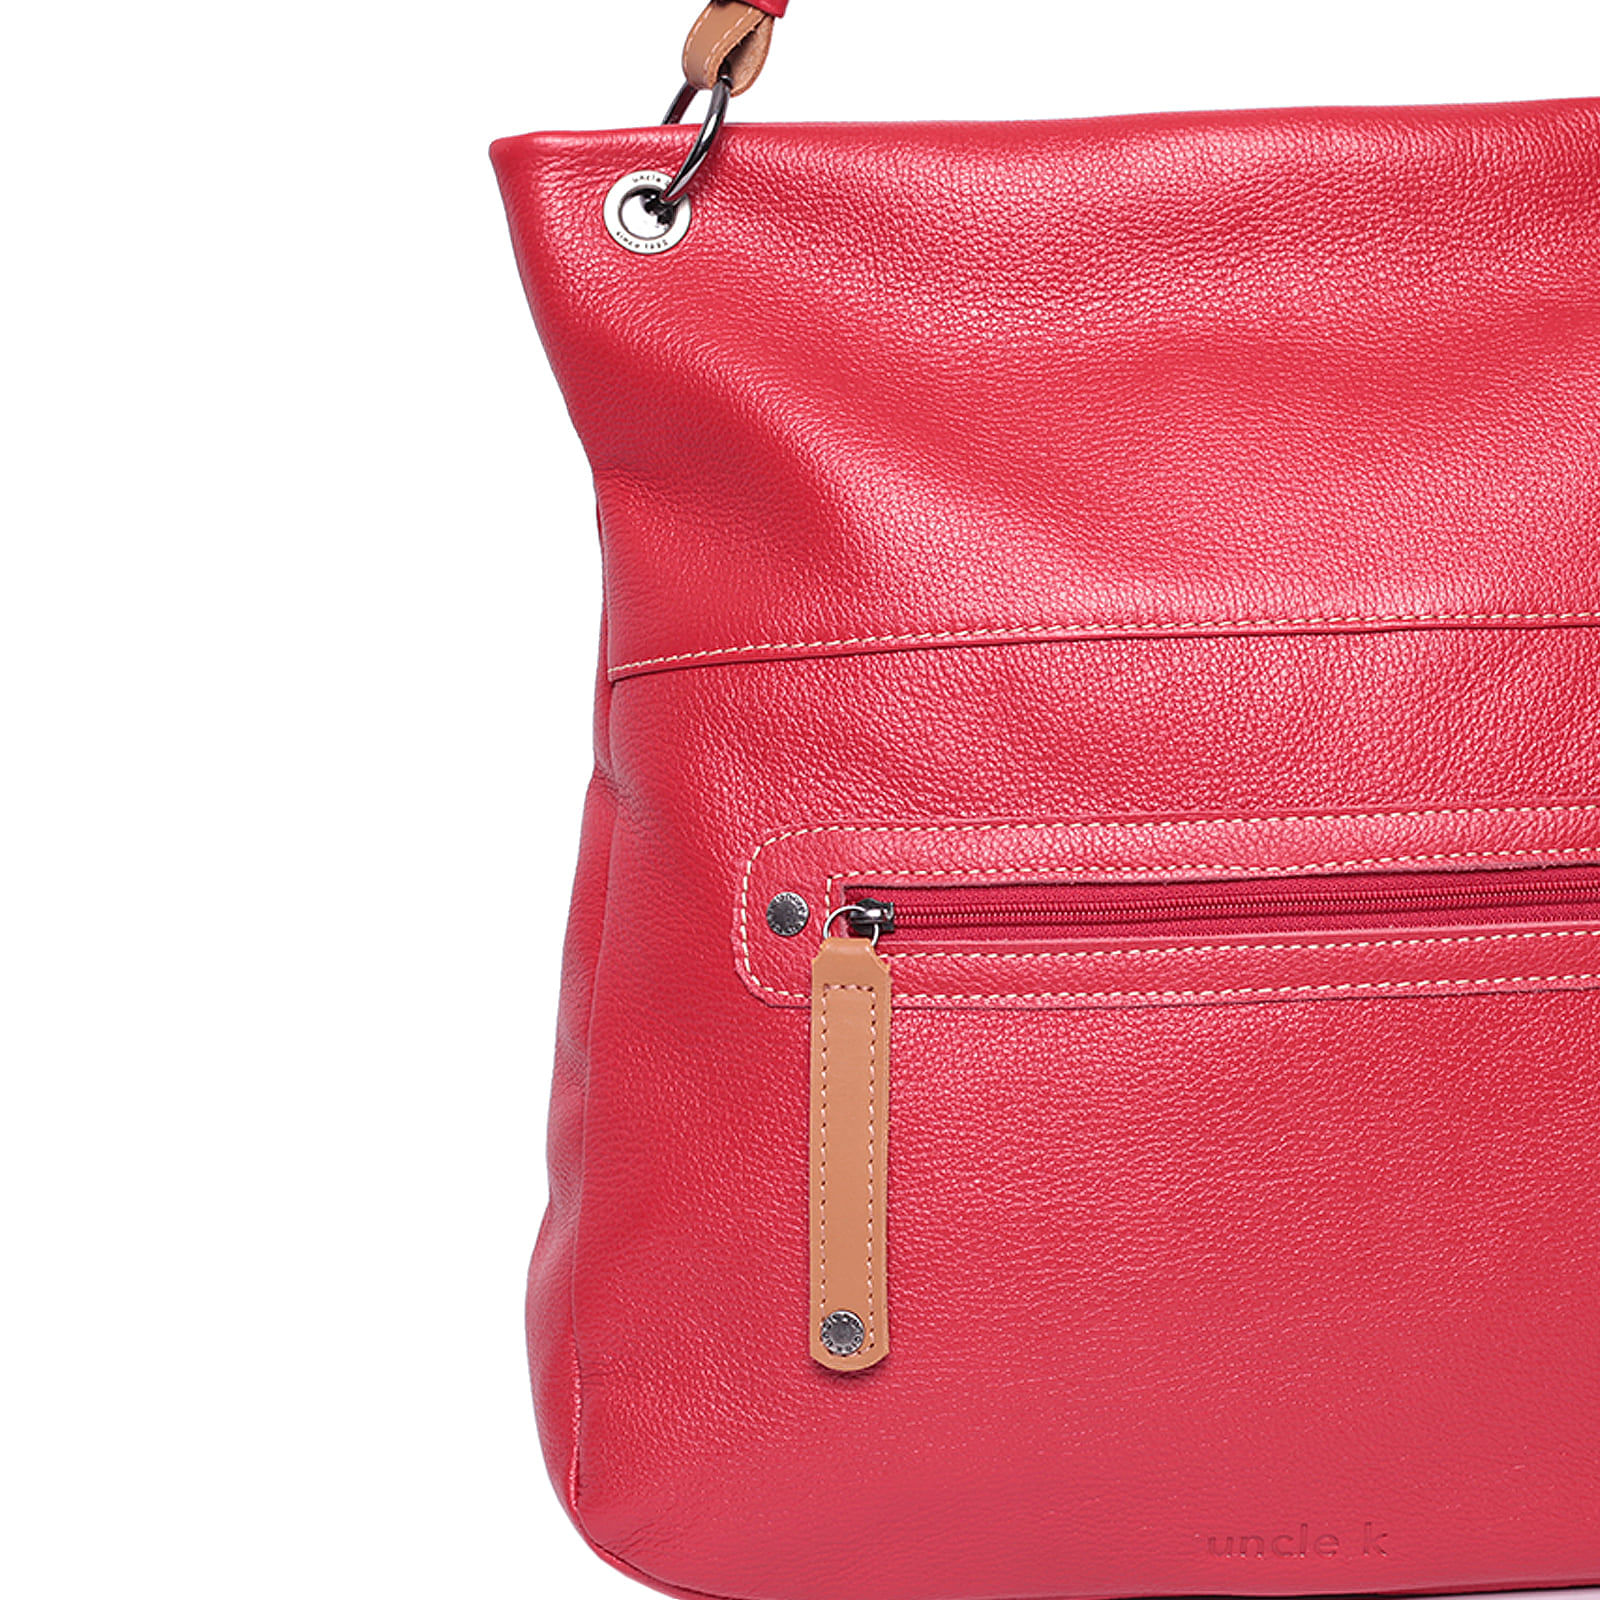 bolsa-shopping-bag-couro-61105-v24-vermelho-3